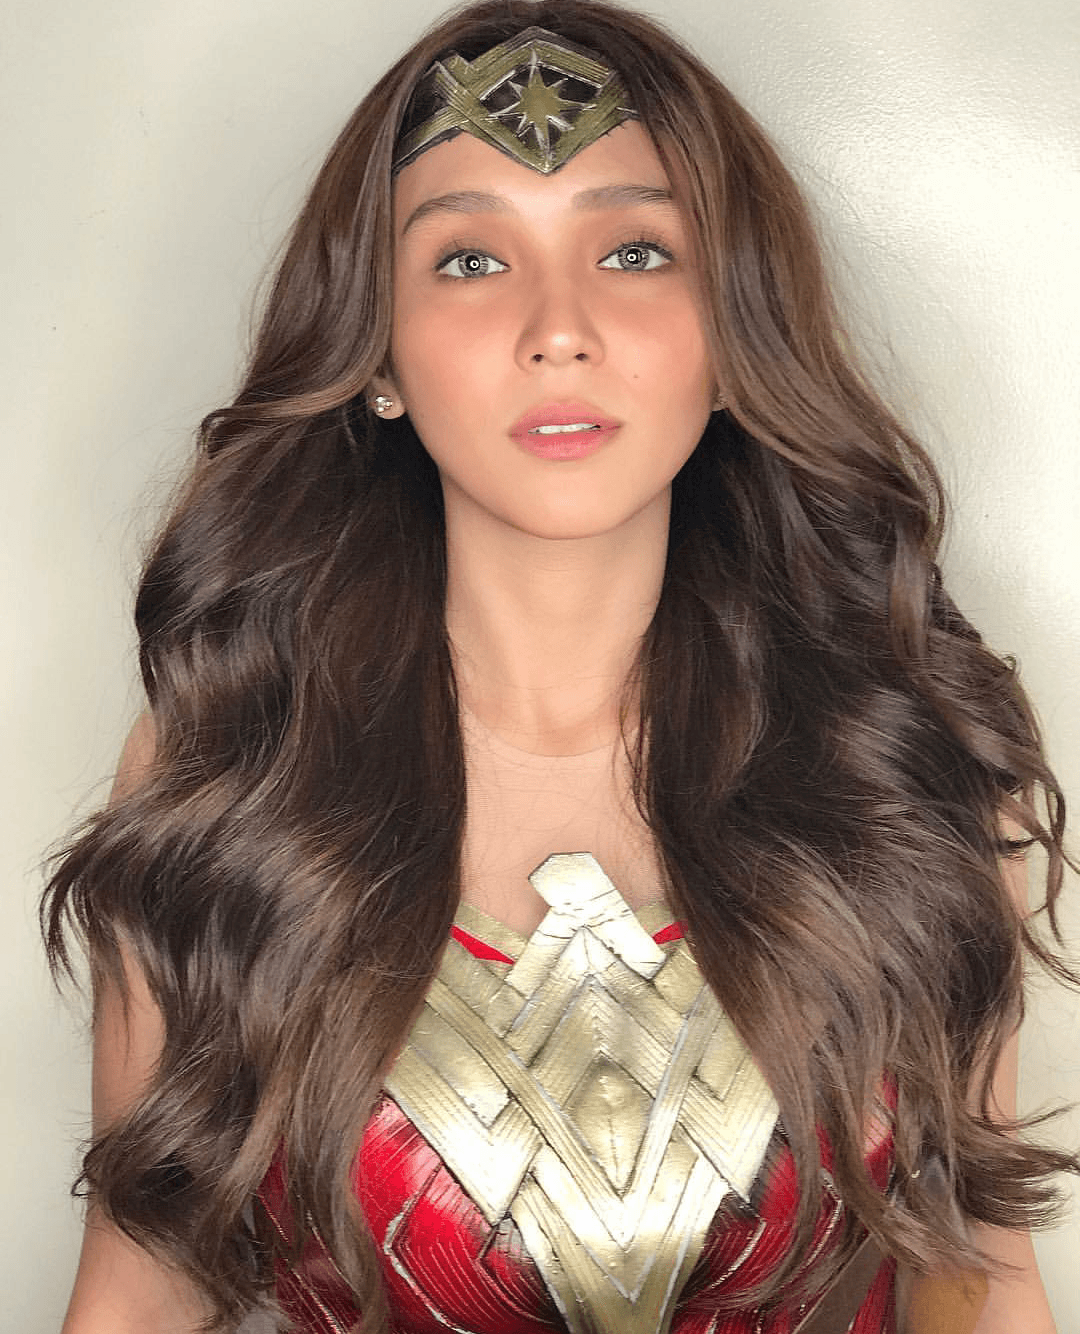 LOOK: Kathryn Bernardo slays in Wonder Woman costume